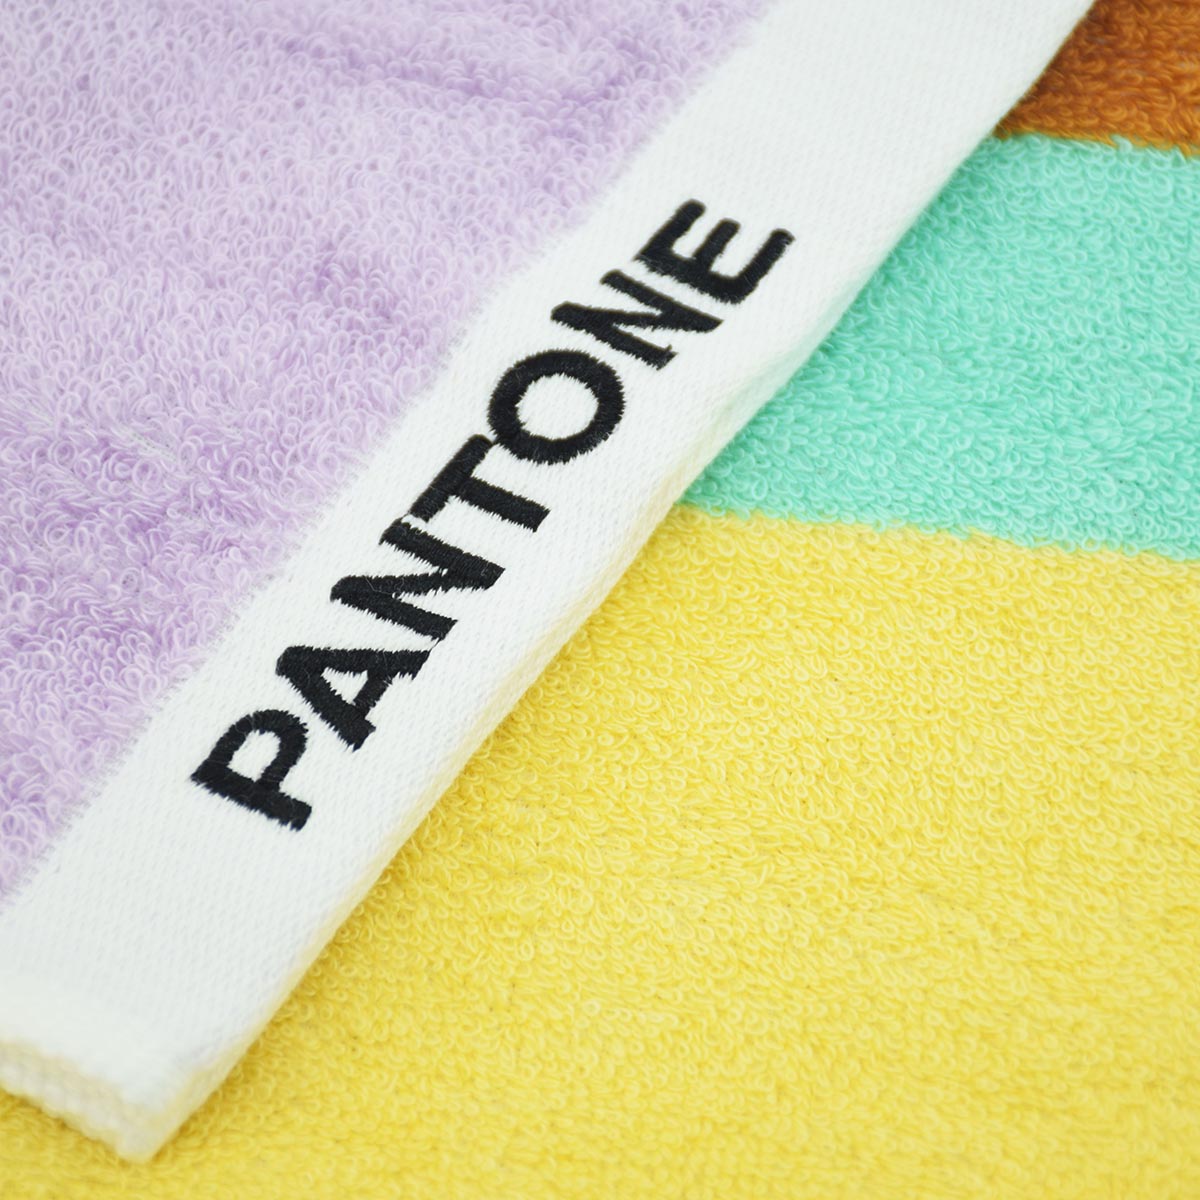 PANTONE 100%優質純棉印花毛巾（方巾）GB01W